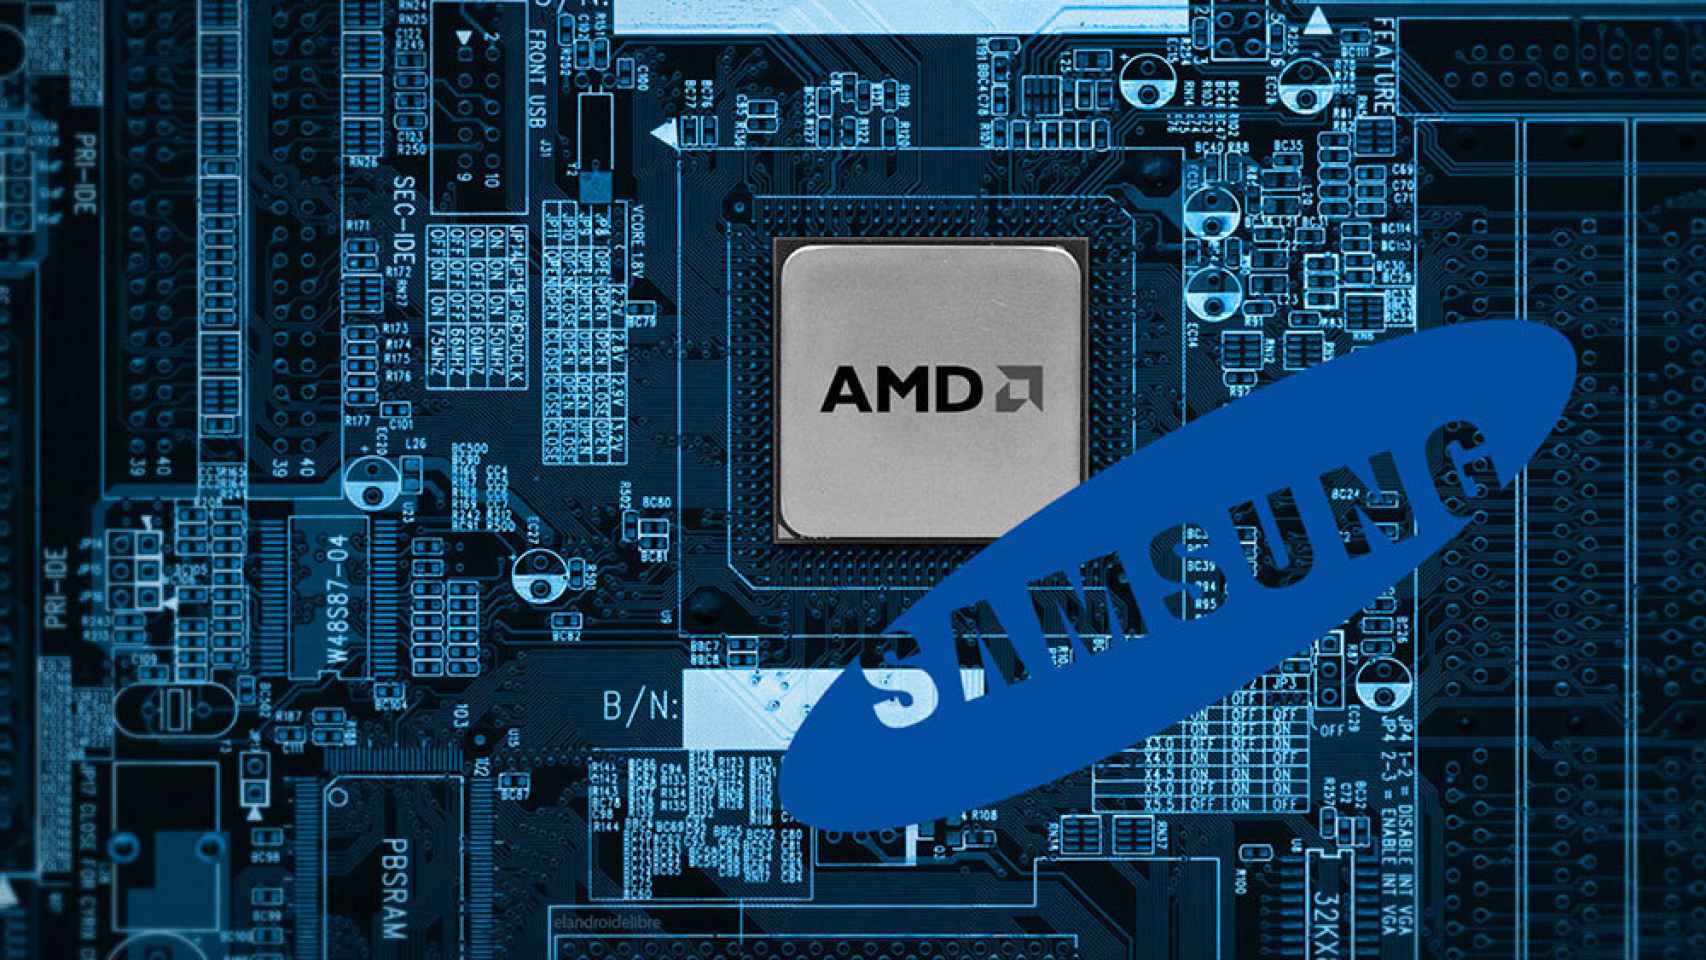 Samsung interesado en comprar AMD, los rumores resurgen con más fuerza